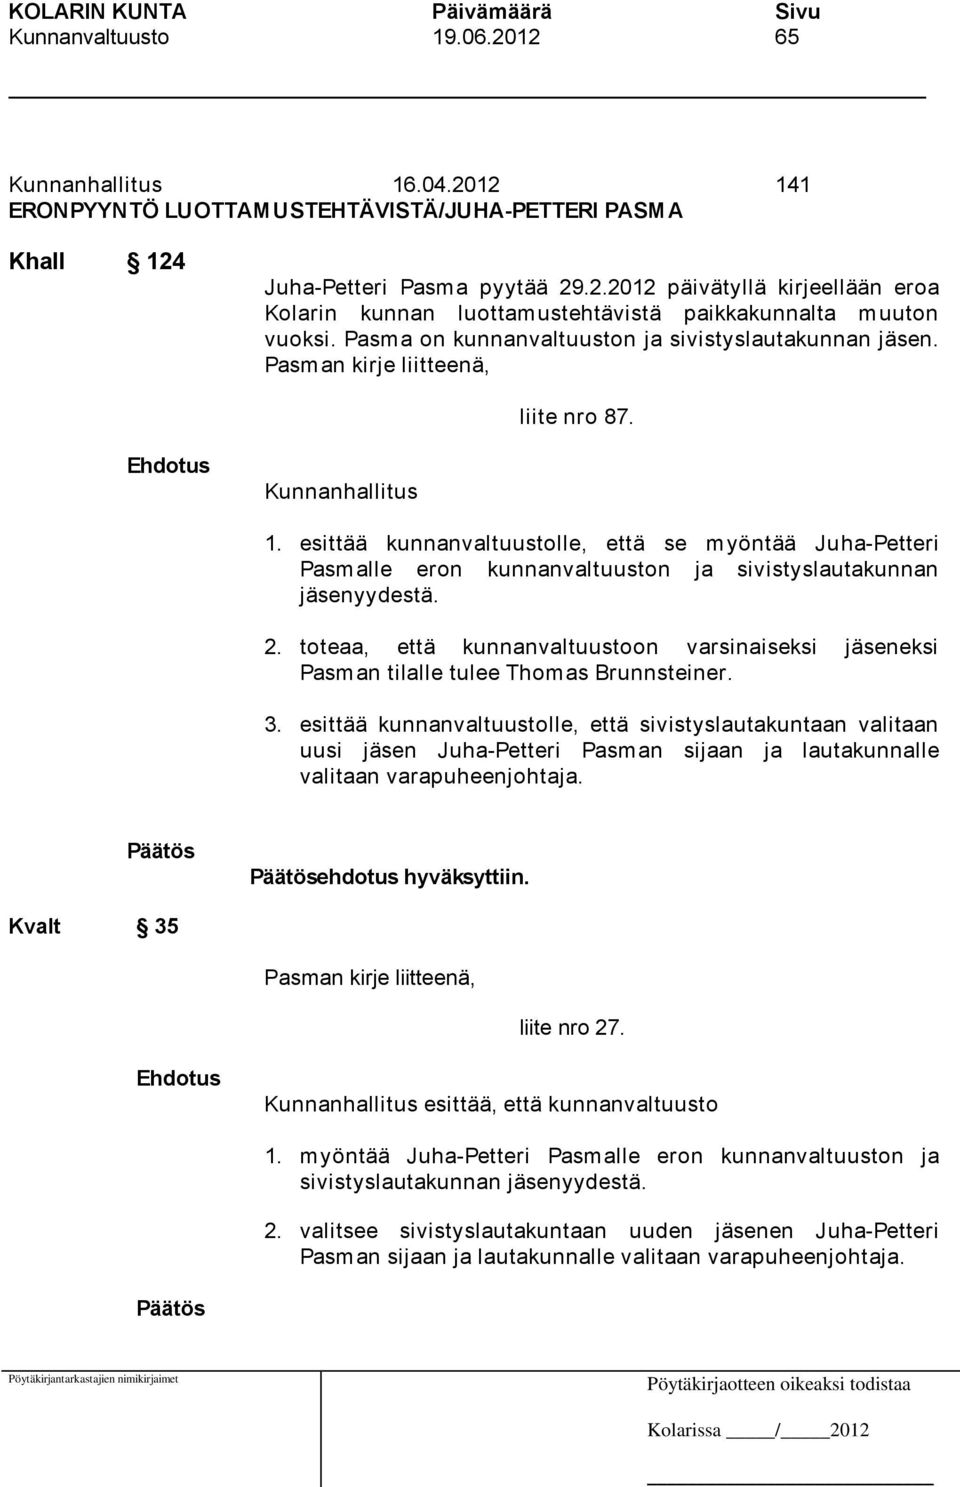 esittää kunnanvaltuustolle, että se myöntää Juha-Petteri Pasmalle eron kunnanvaltuuston ja sivistyslautakunnan jäsenyydestä. 2.